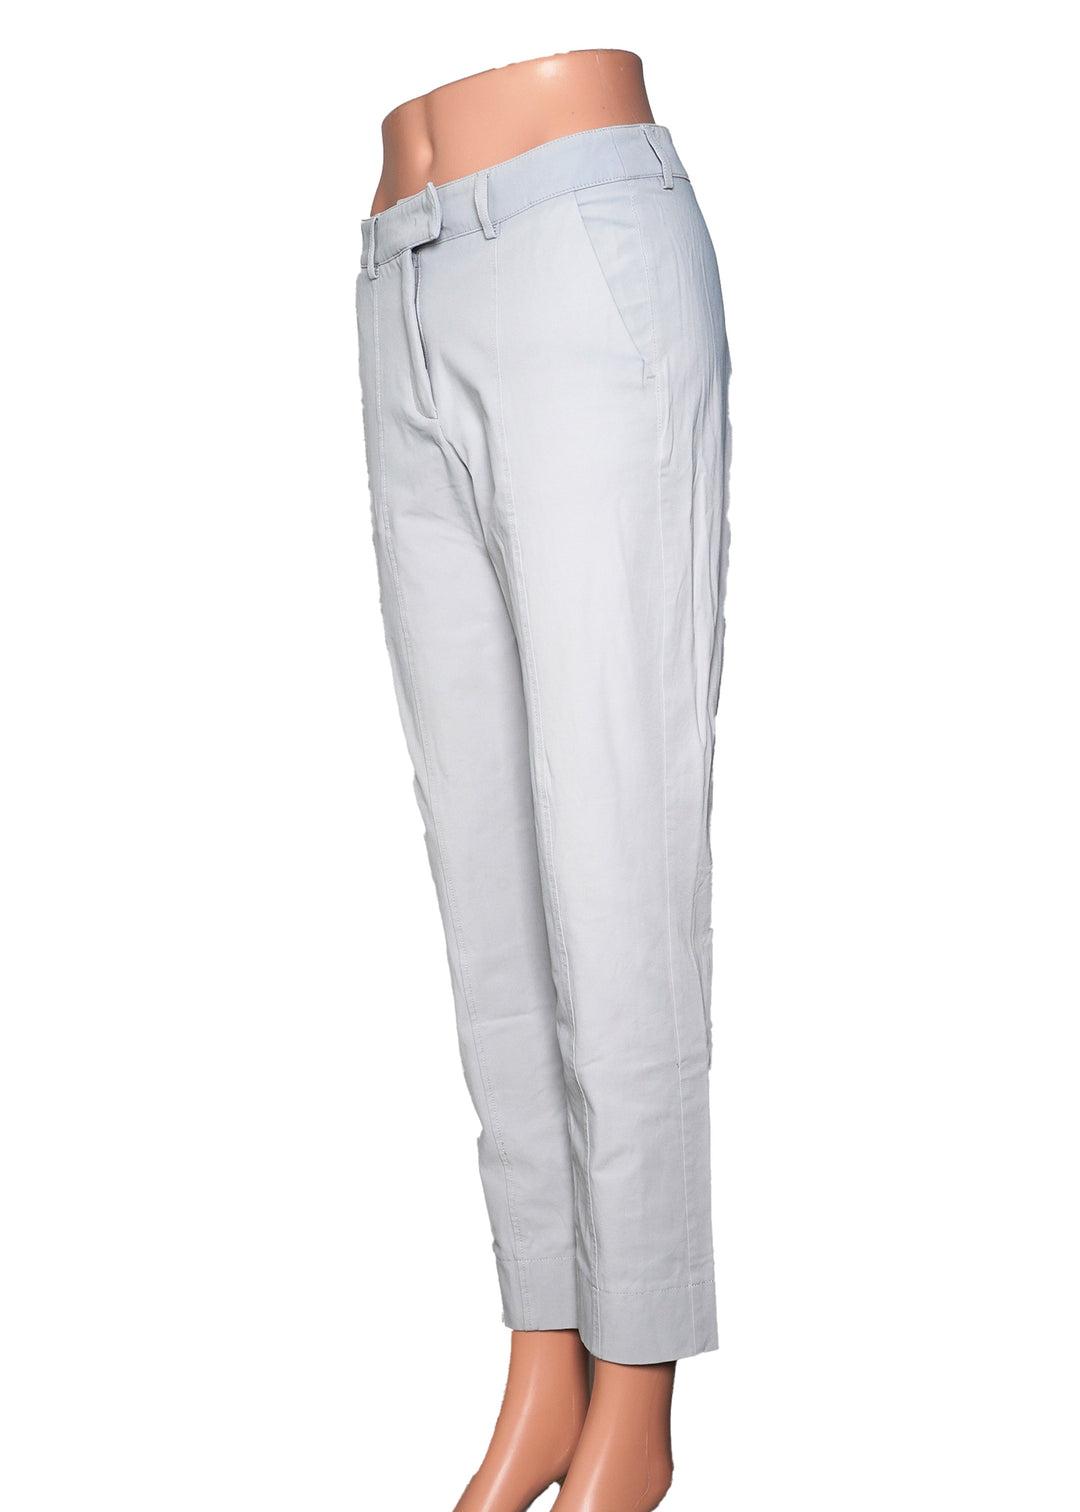 Golfino Pants - Grey -  Size 6 - Skorzie